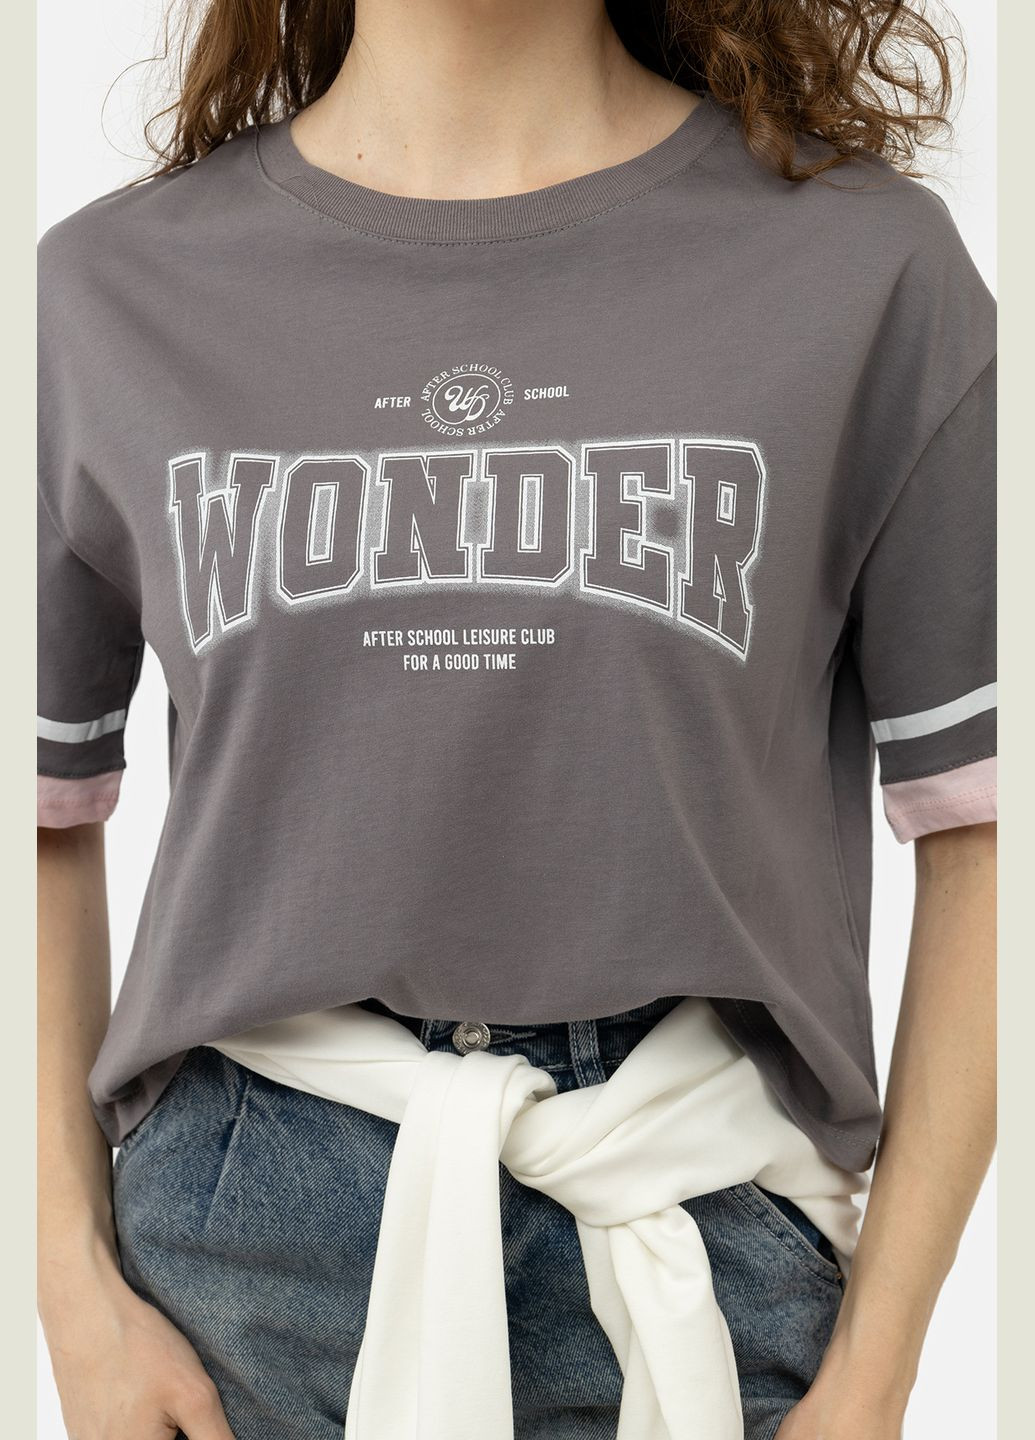 Серая летняя женская футболка с коротким рукавом цвет серый цб-00245336 Divon